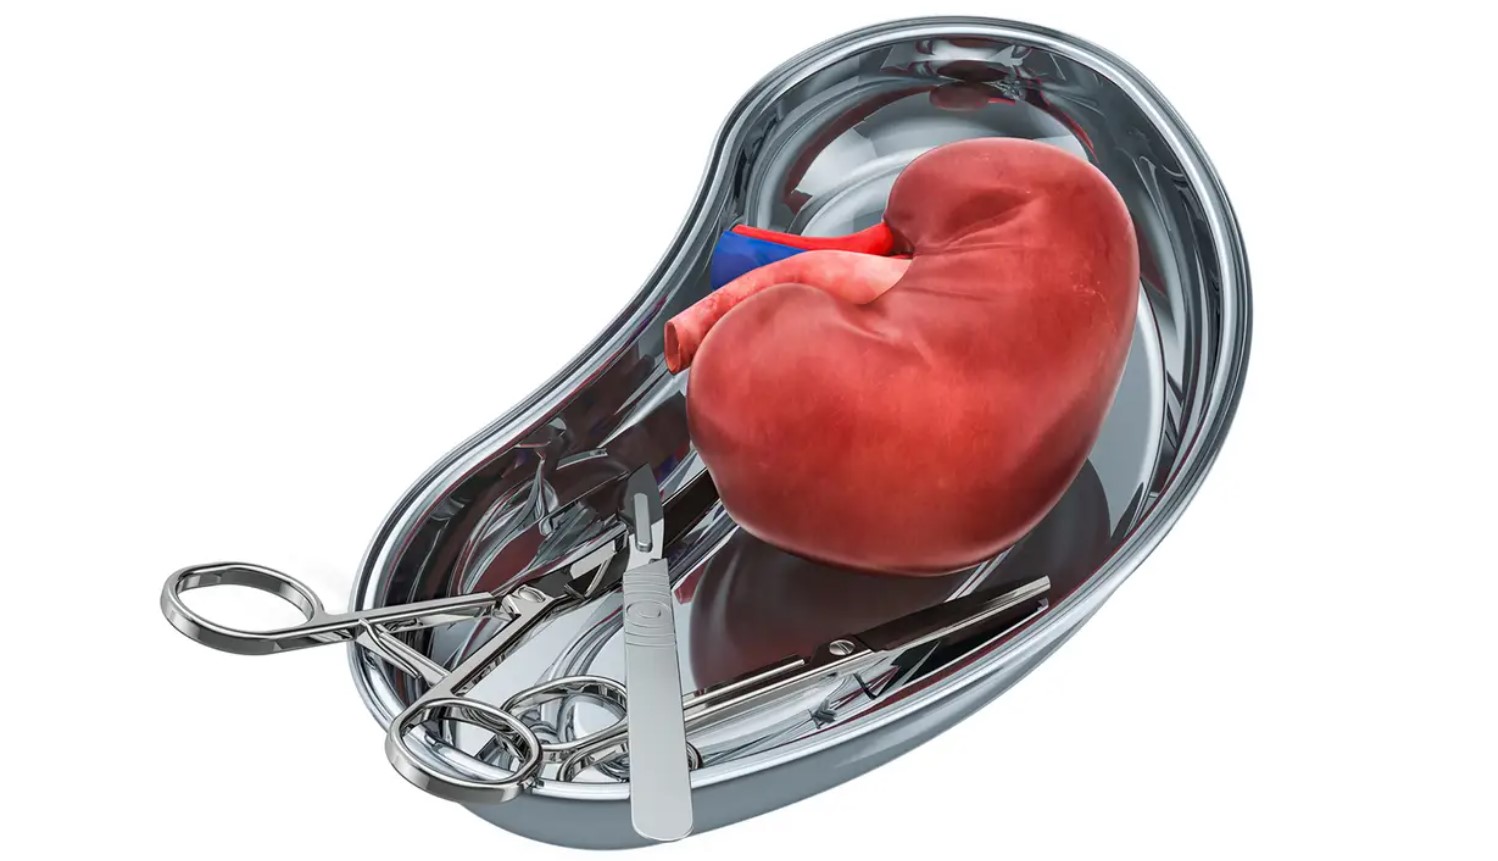 Kidney Transplant in India - Dr Dushyant Nadar